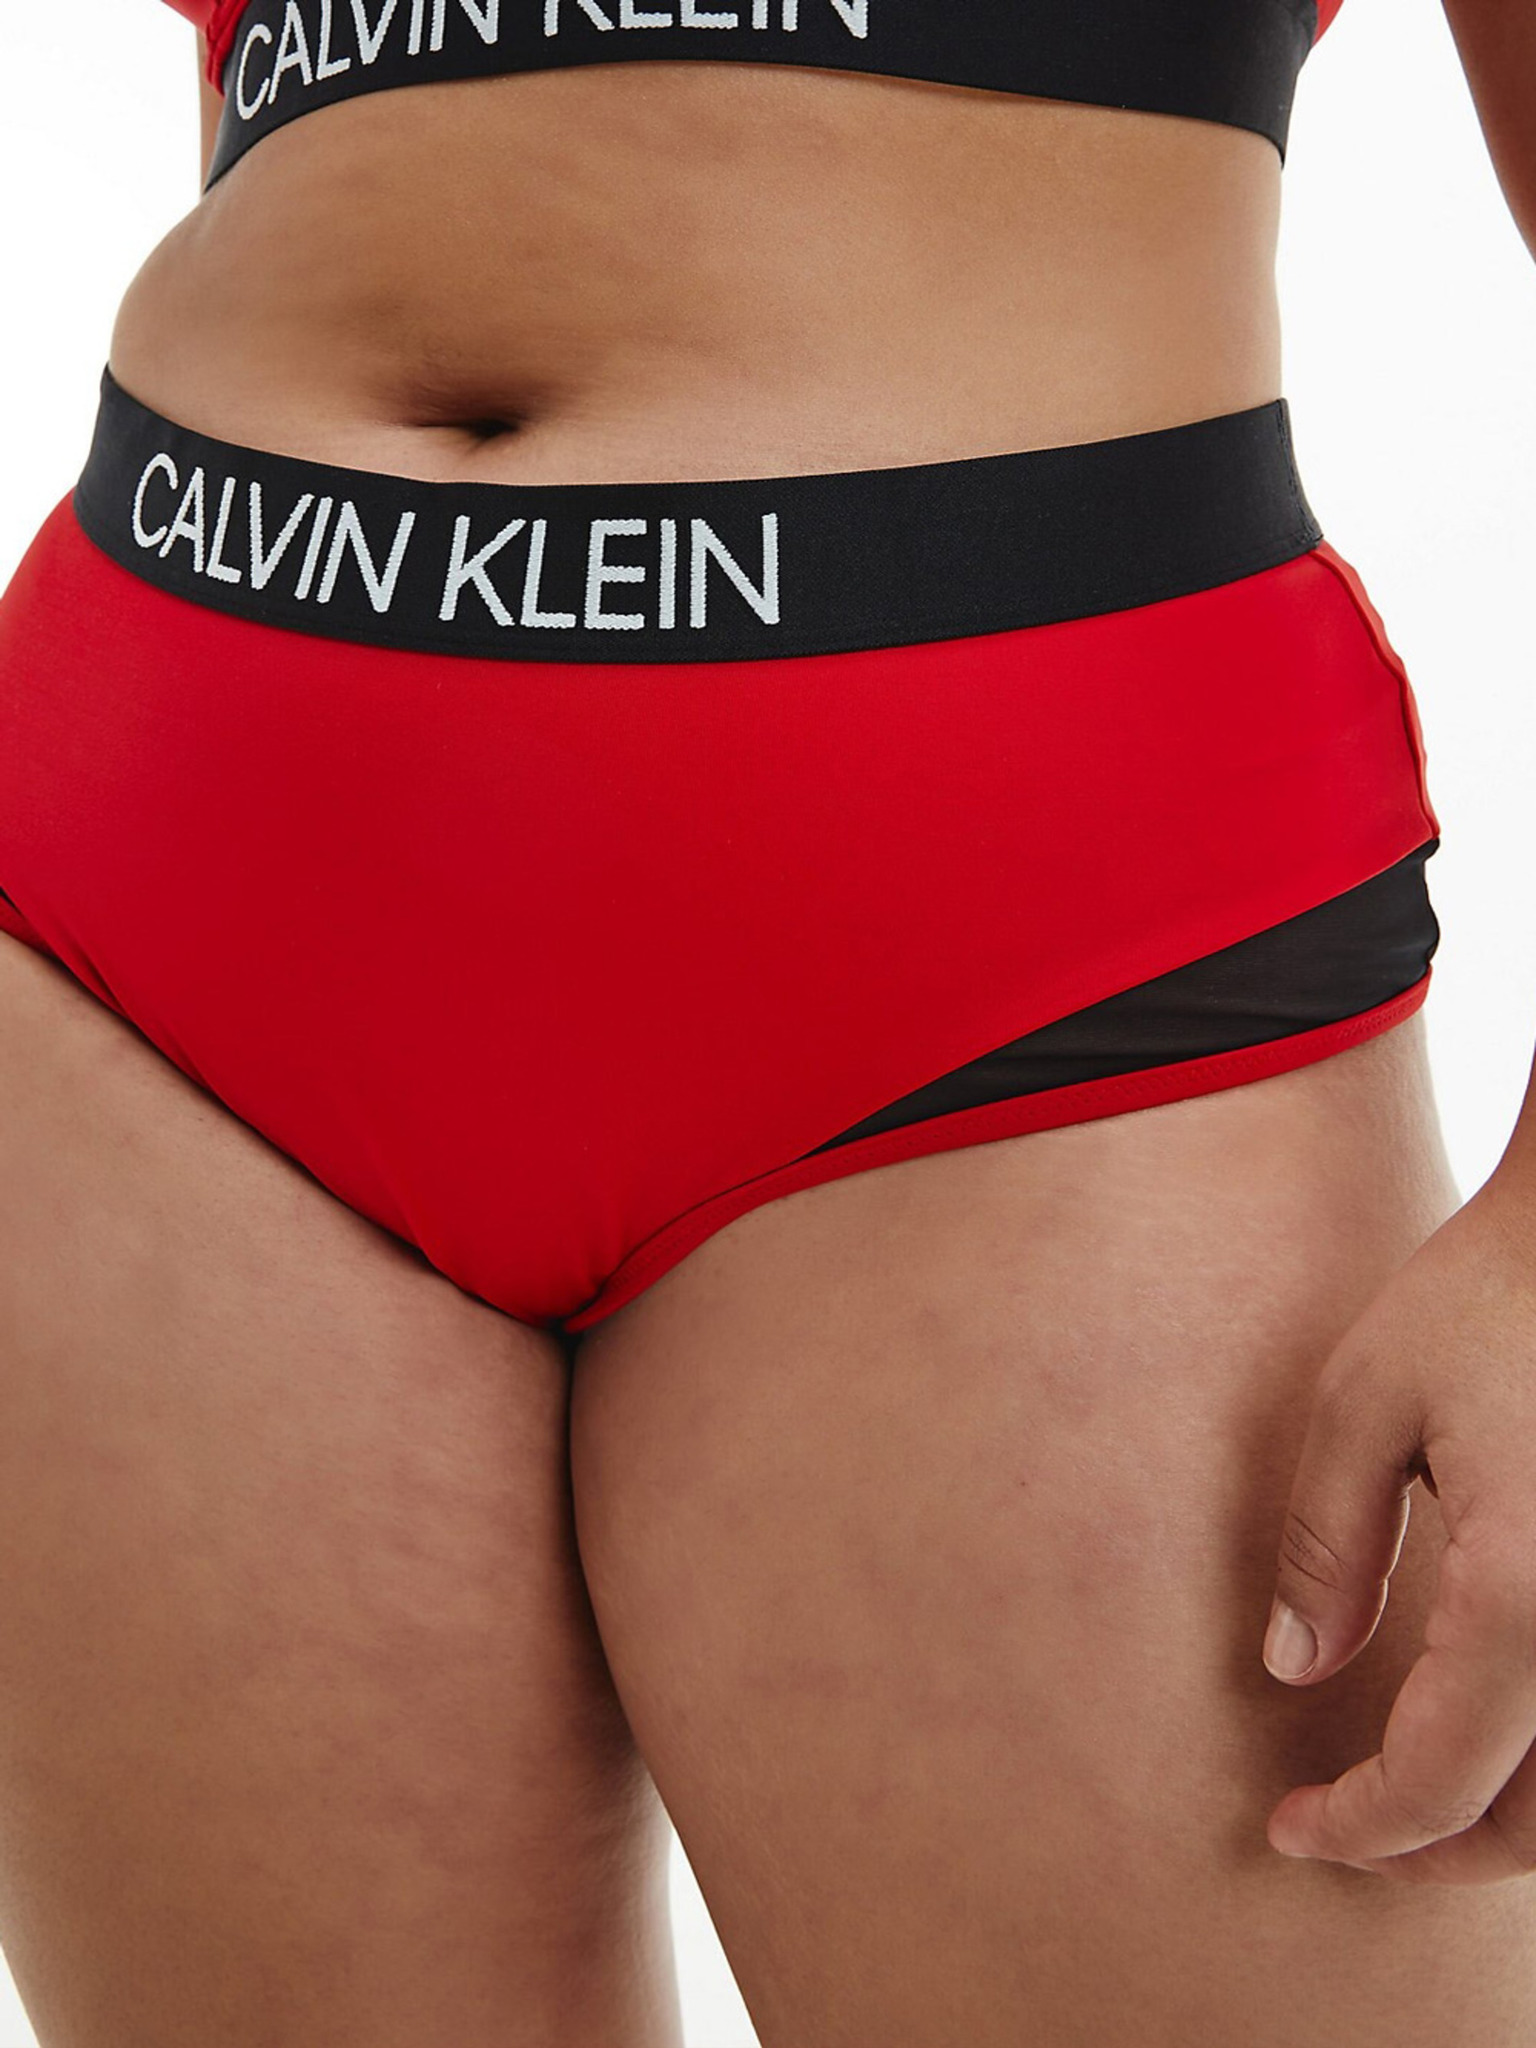 Calvin Klein Underwear - High Waist Bikin Bikini bottom